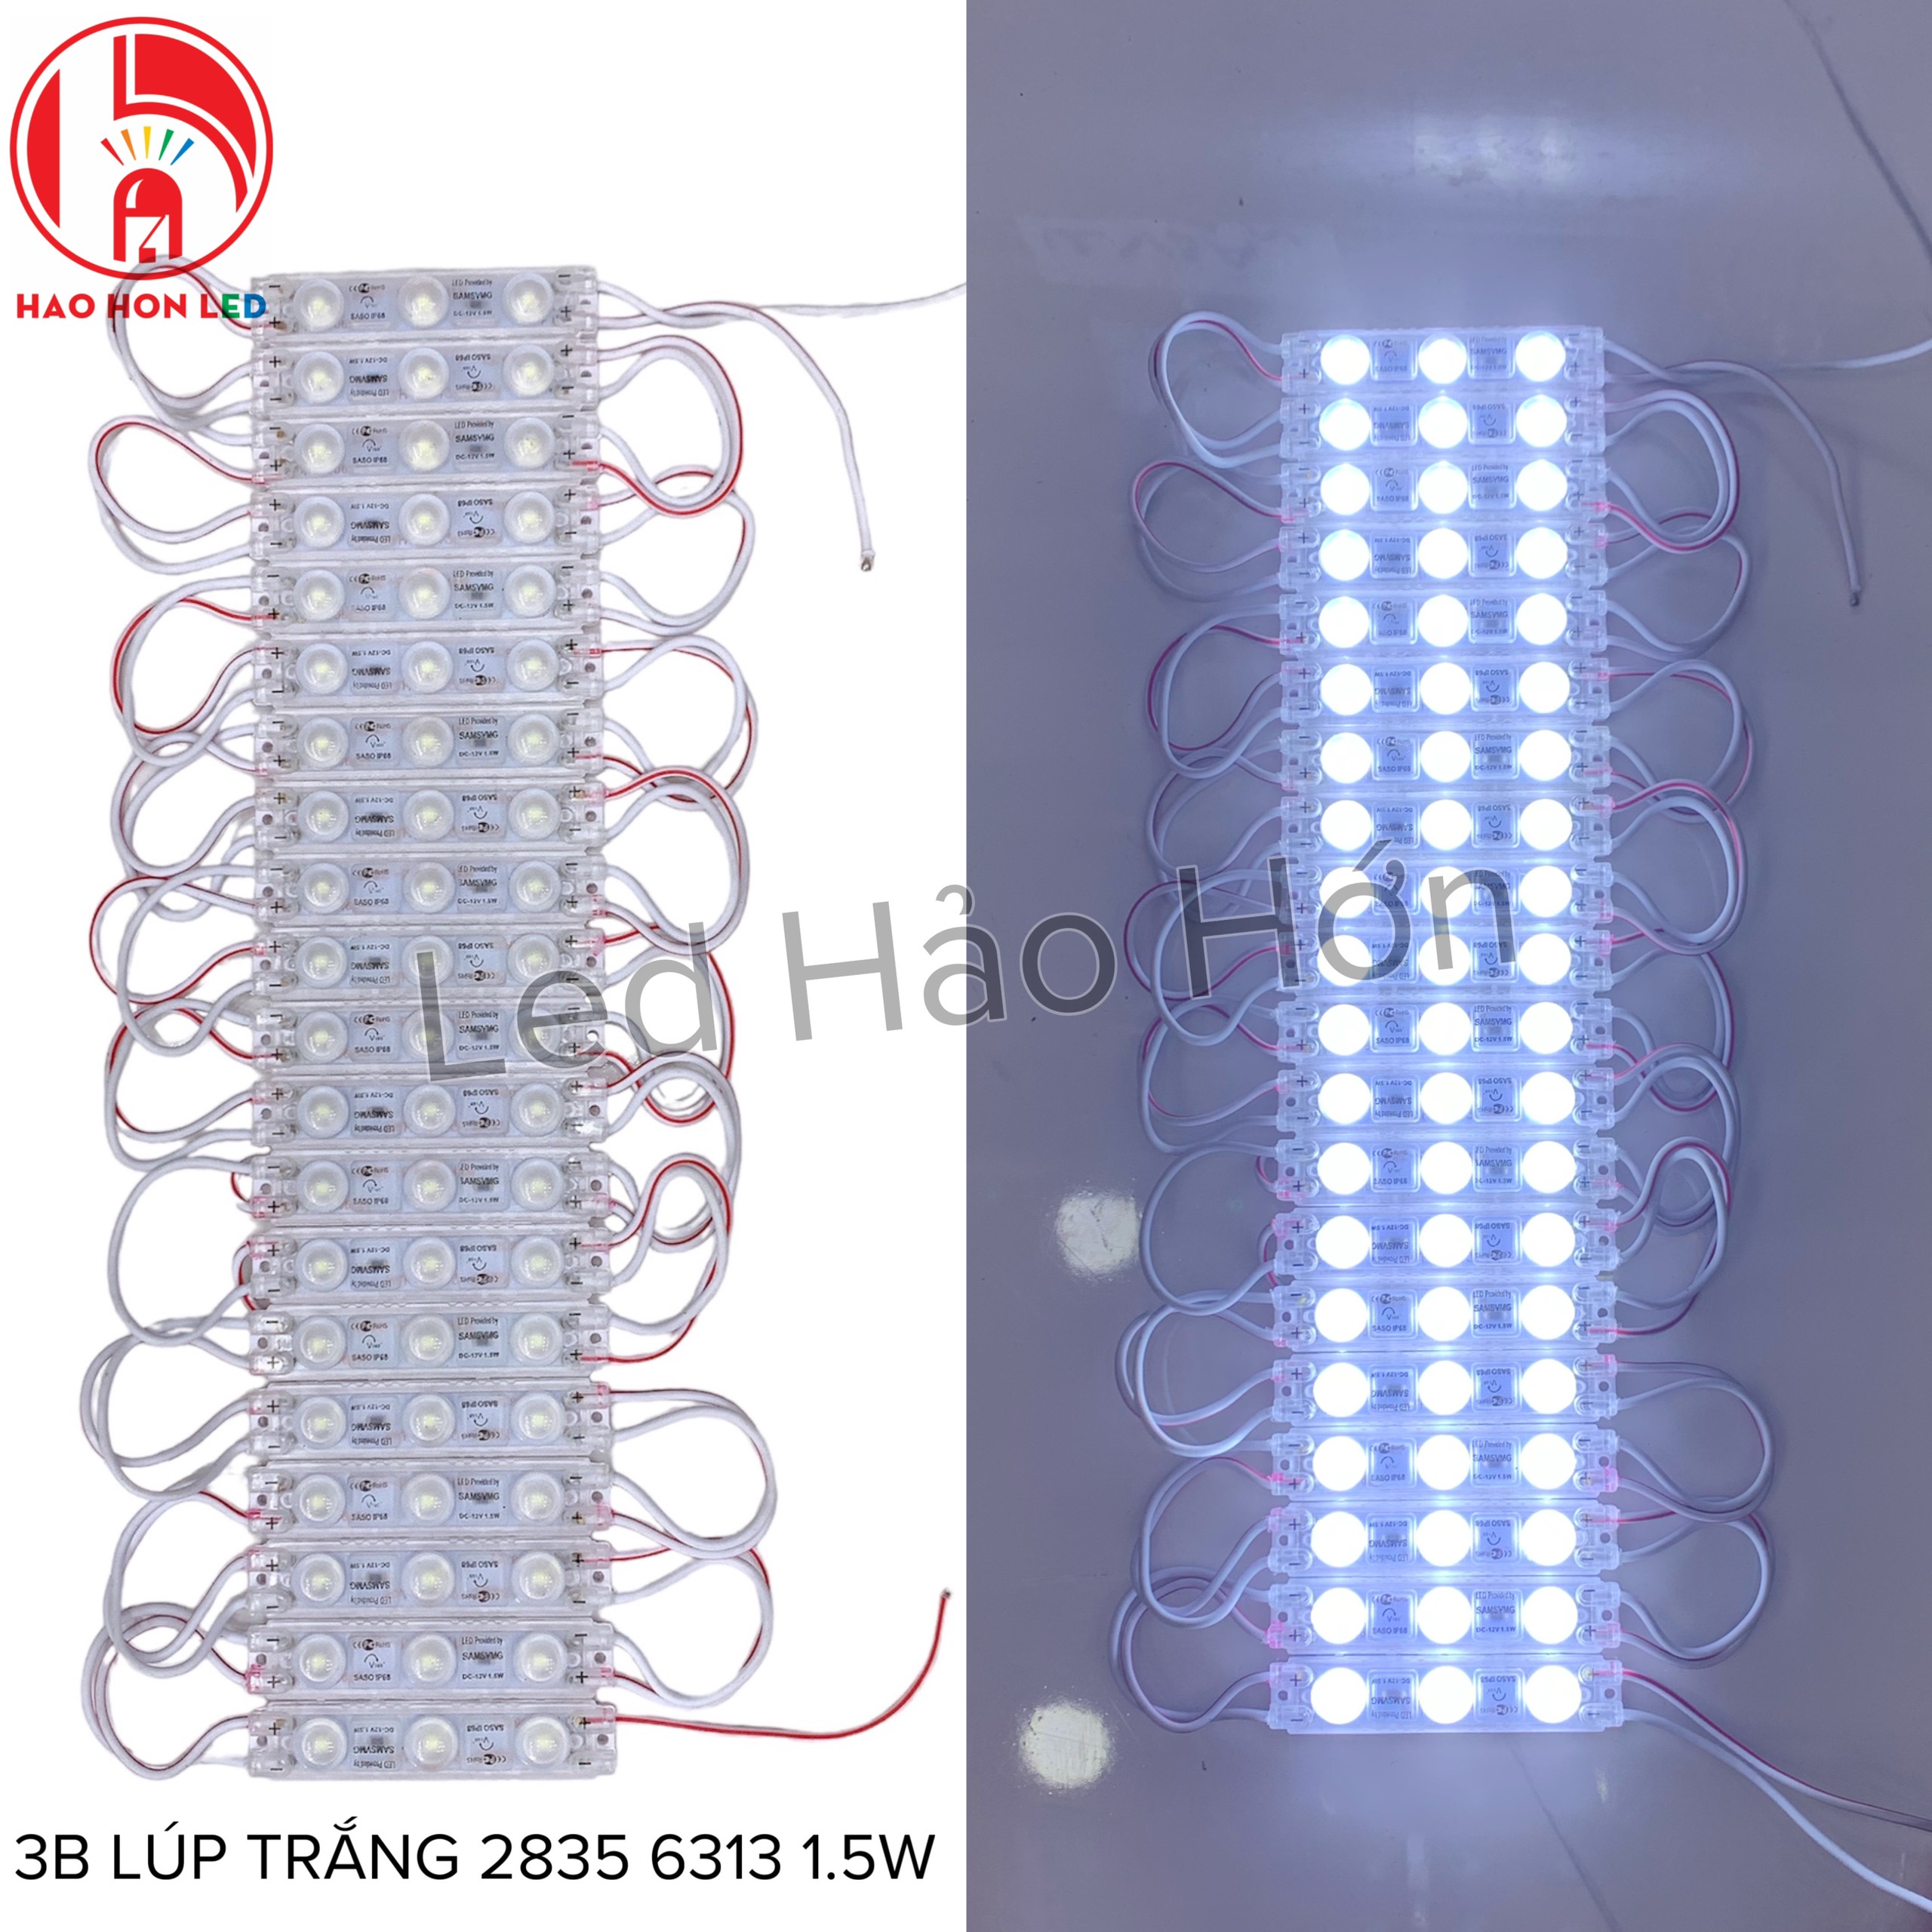 LED HẮT 3B LÚP TRẮNG 2835 6313 1.5W